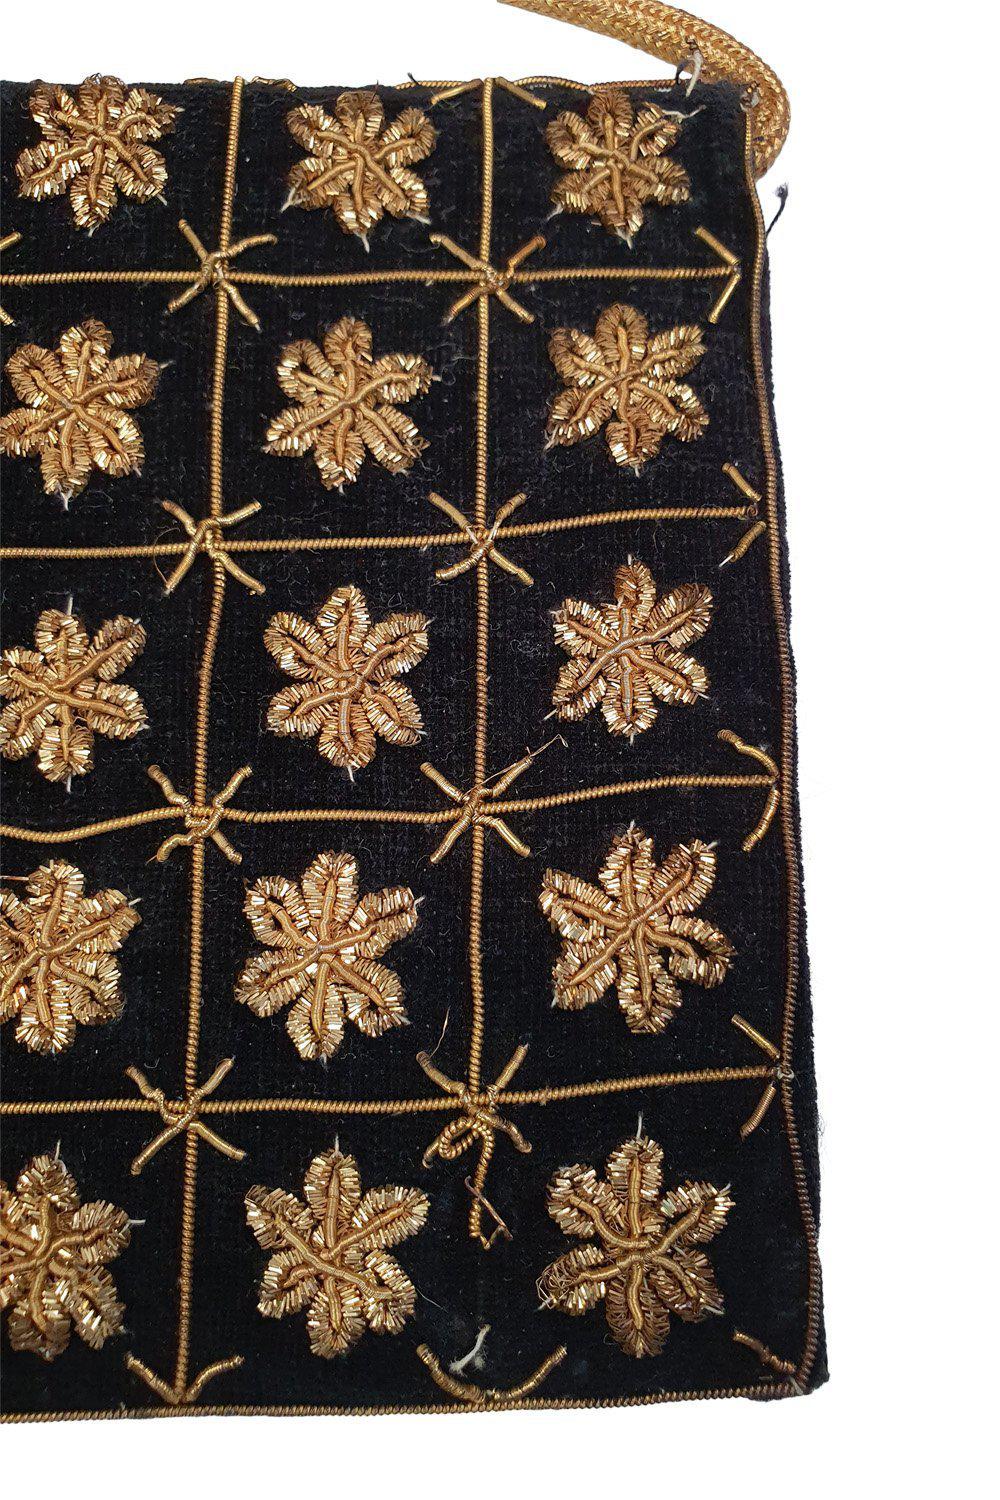 VINTAGE 1930s Black Velvet Embroidered Gold Five Point Flower Repeat Zardozi (S)-The Freperie